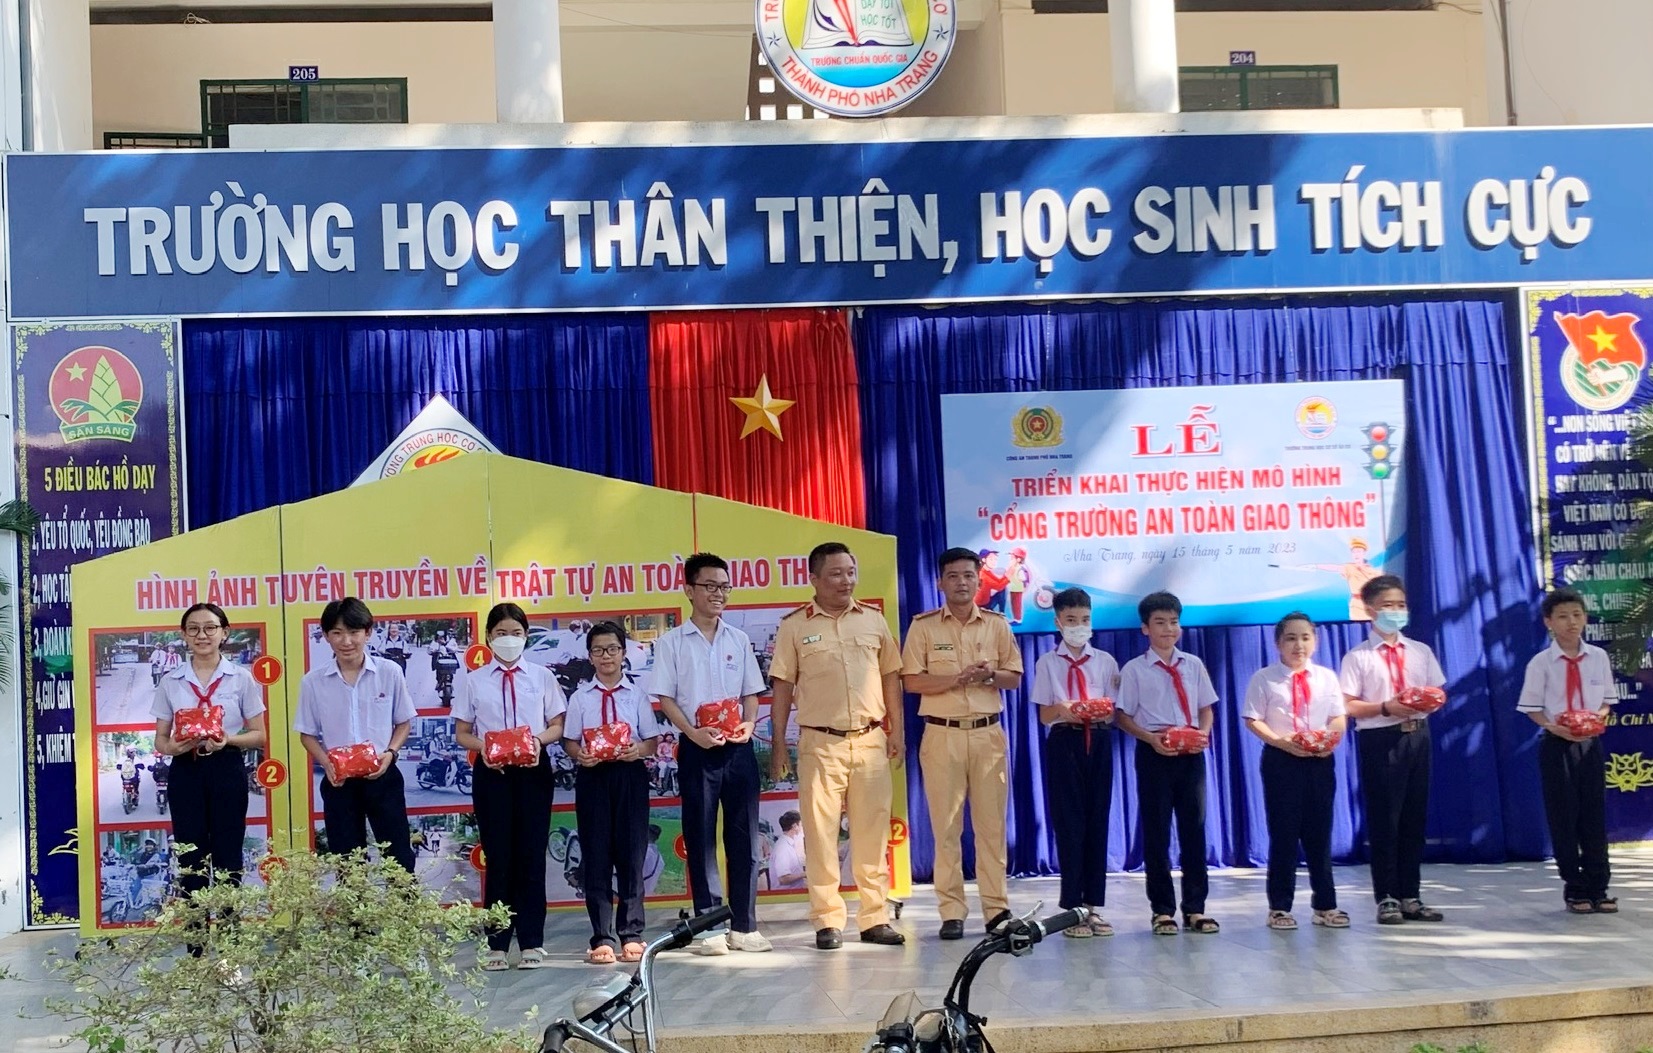 Trường Tiểu học Phú Hoà 2 thực hiện các hoạt động ATGT mô hình về Cổng  trường an toàn  Cổng thông tin điện tử Phòng Giáo dục và Đào tạo Thành